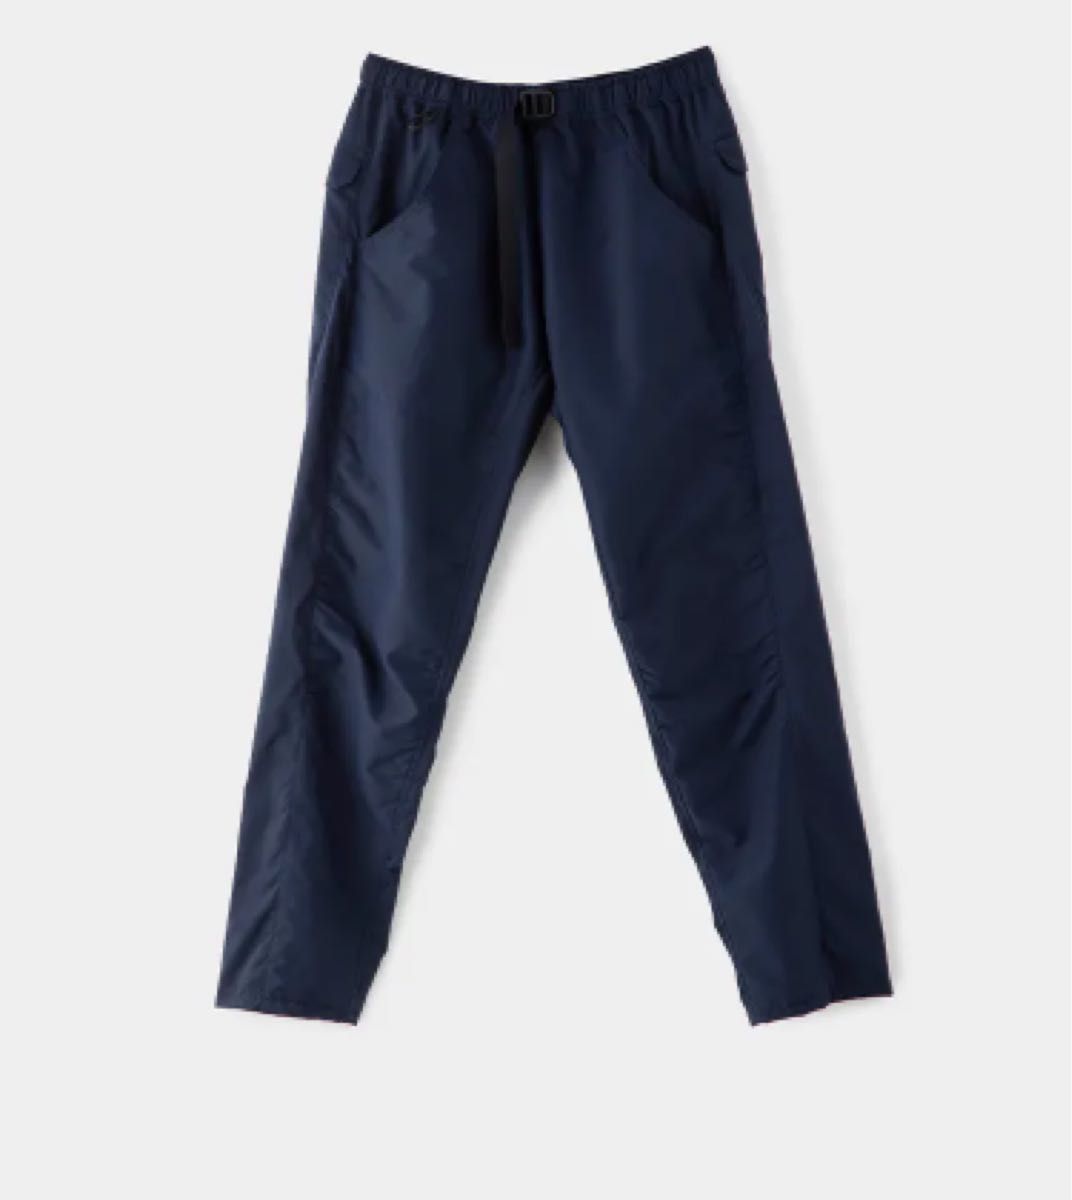 山と道 DW 5-Pocket Pants Men Navy M-Tall UL 新品 ネイビー パンツ Ultralight 